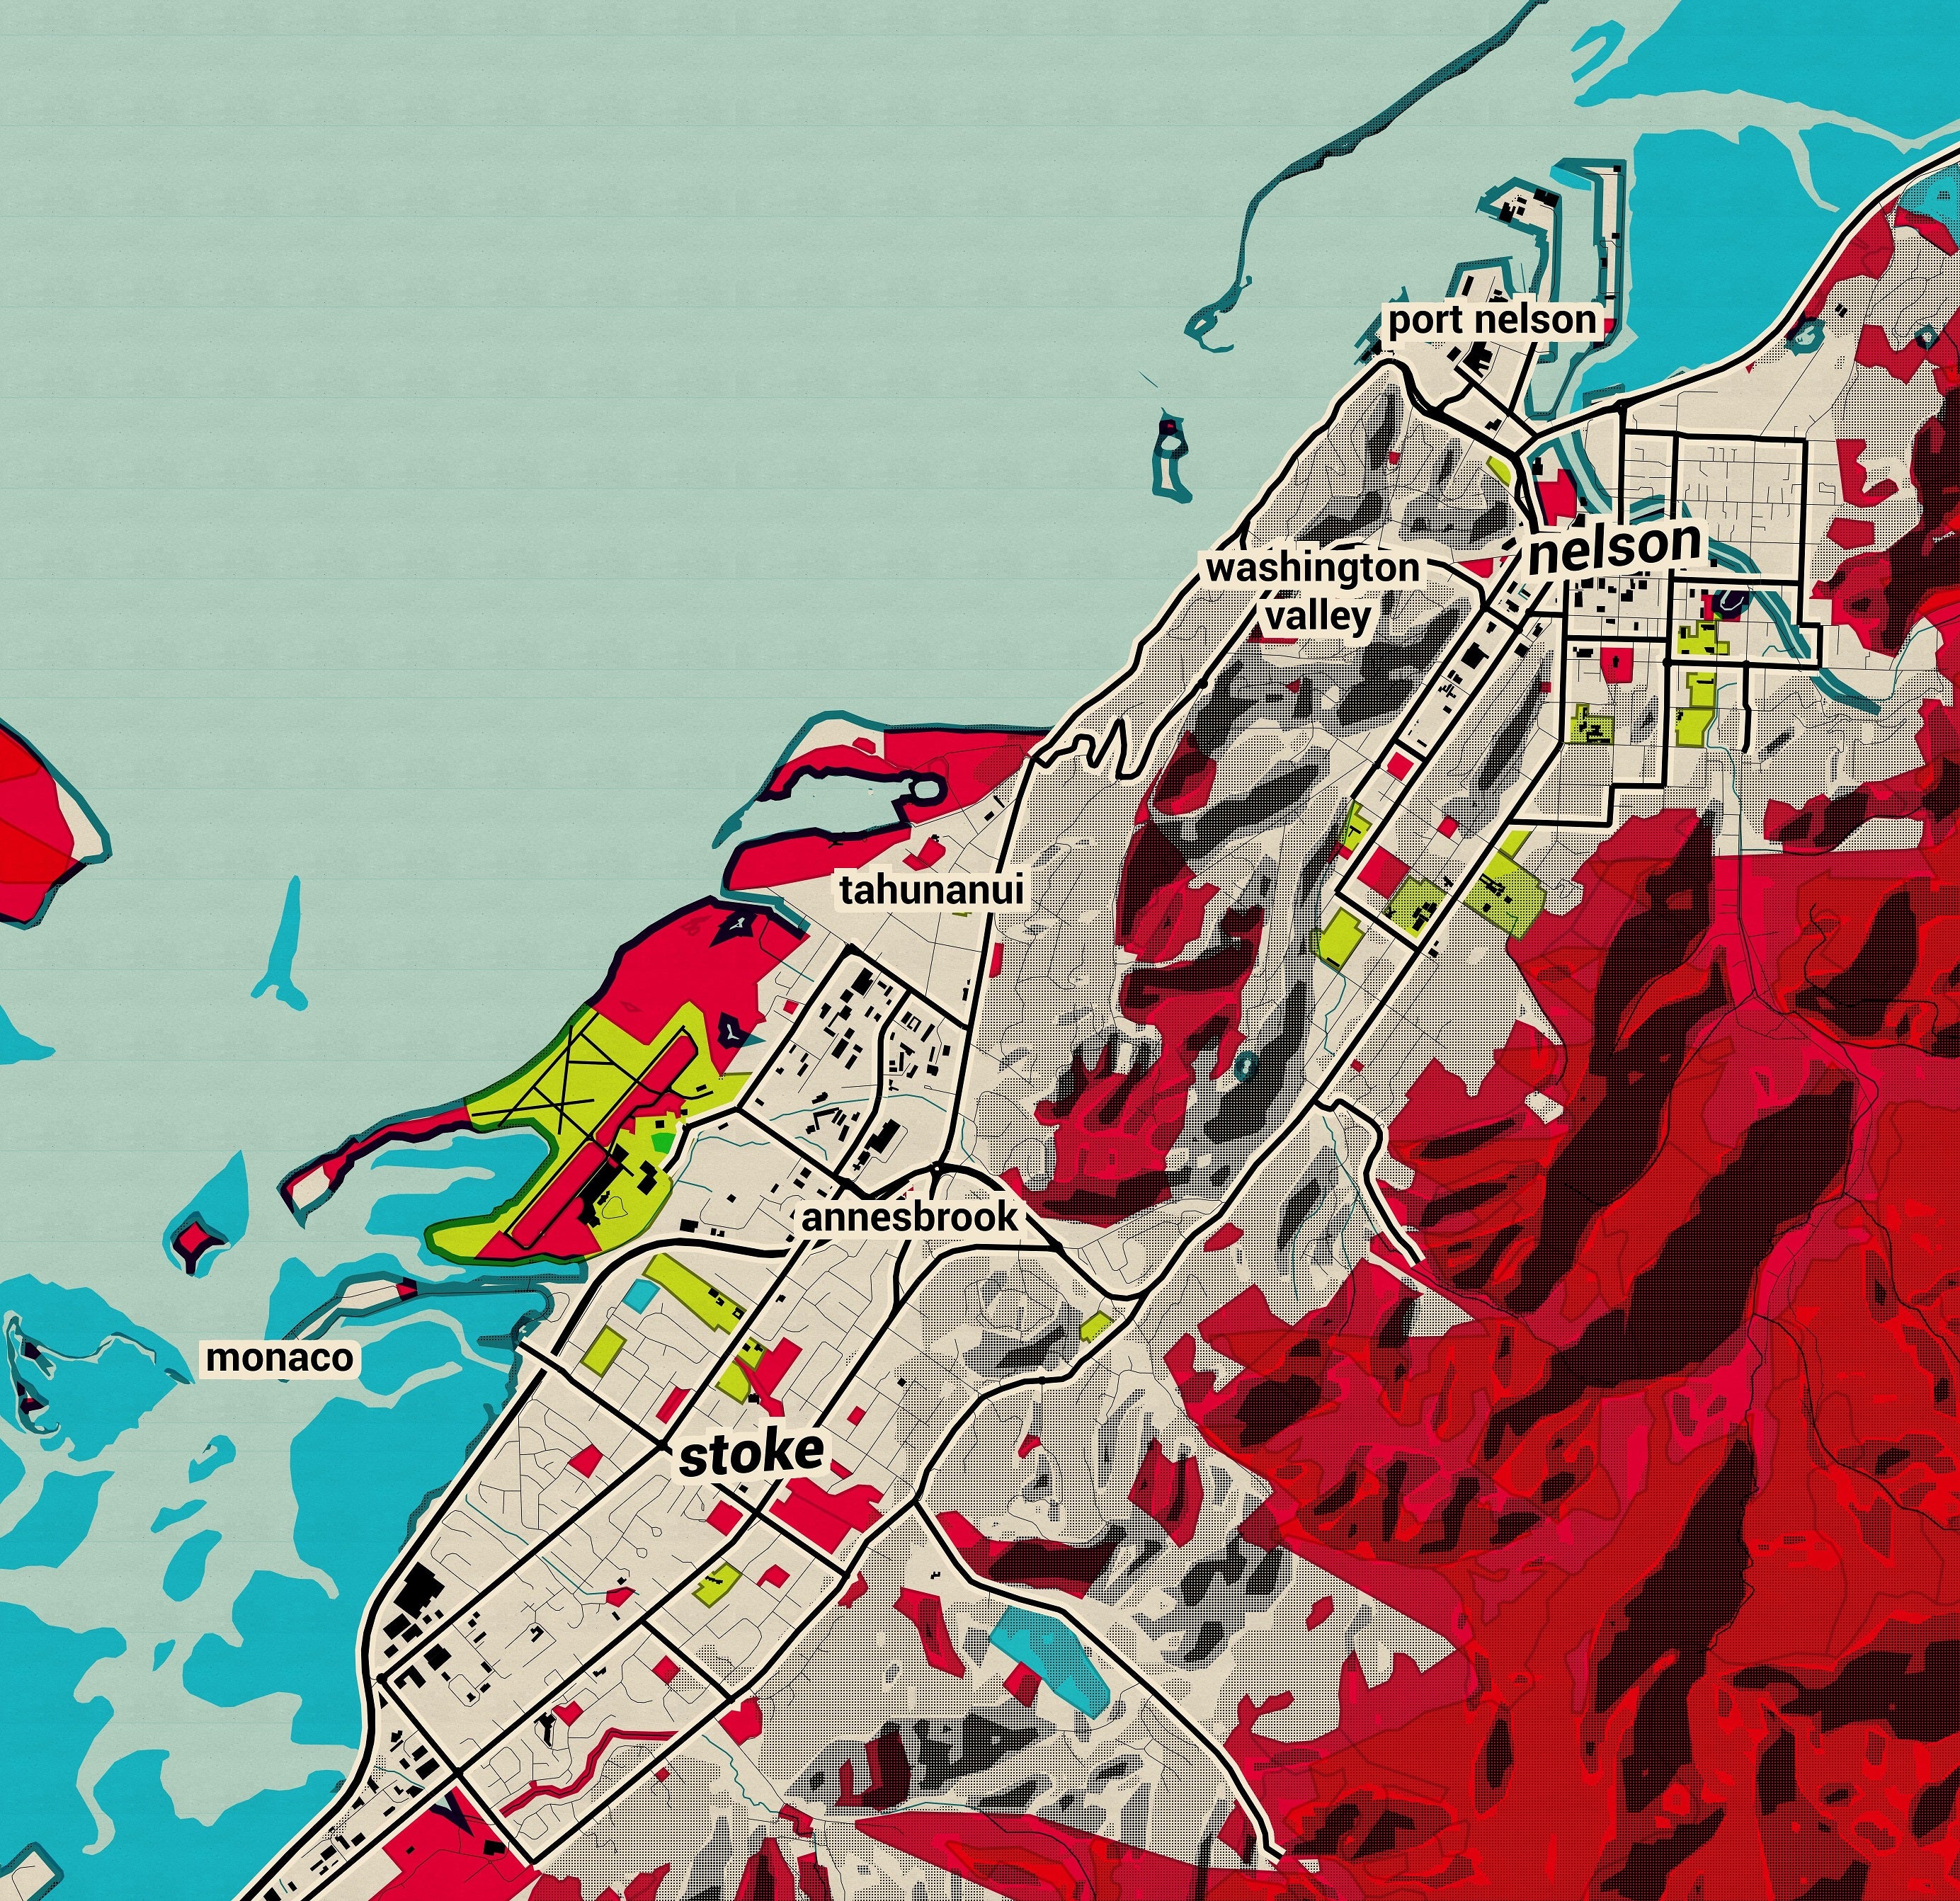 Nelson City Map - Pop Art